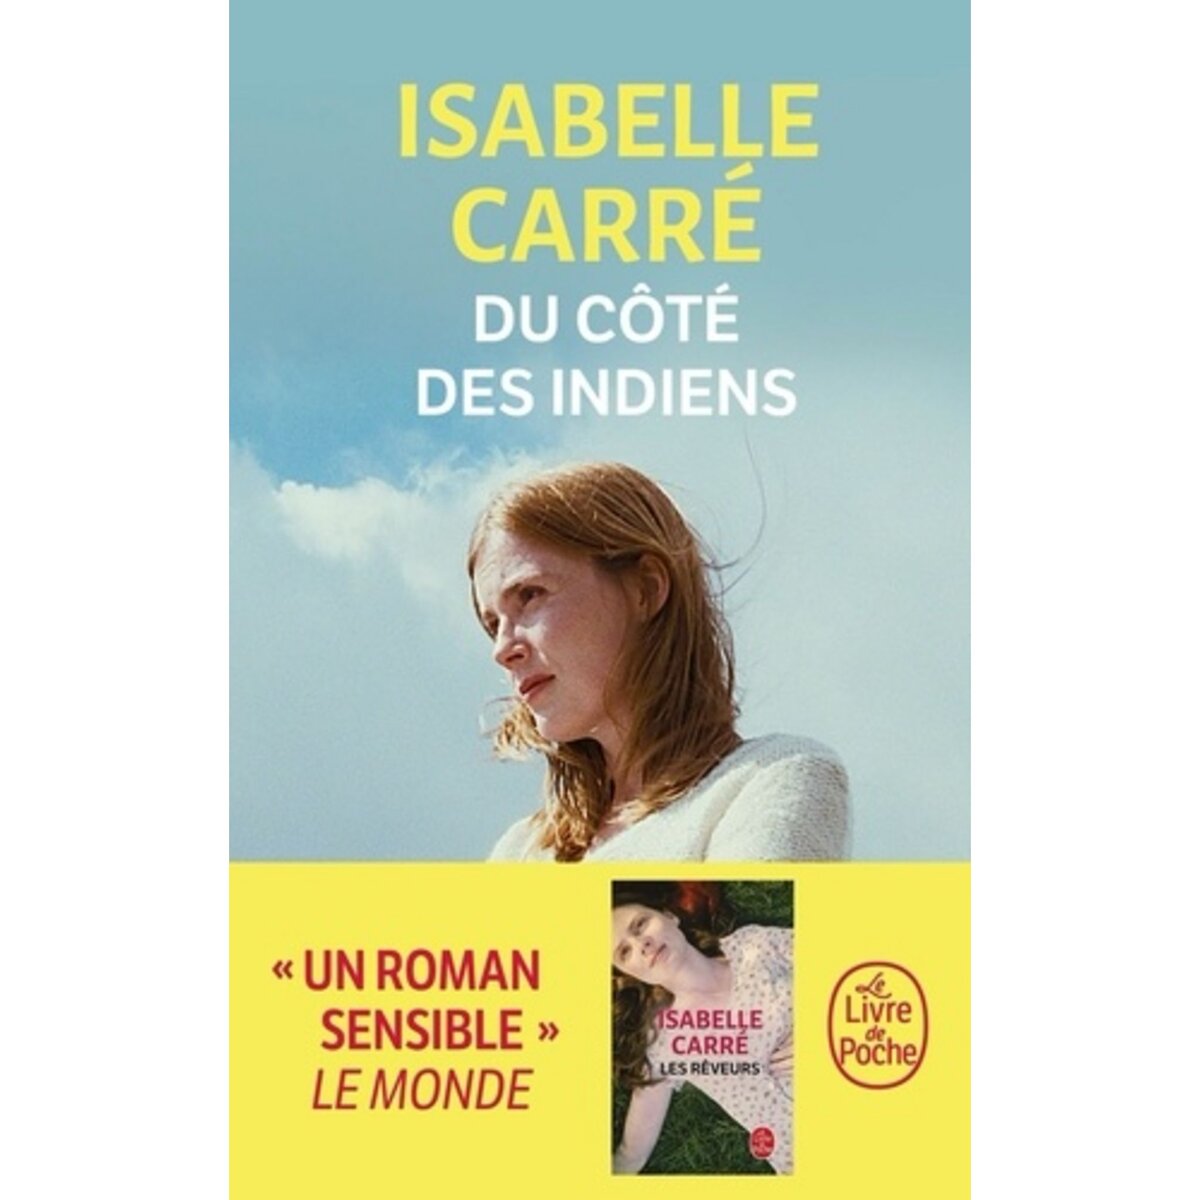  DU COTE DES INDIENS, Carré Isabelle